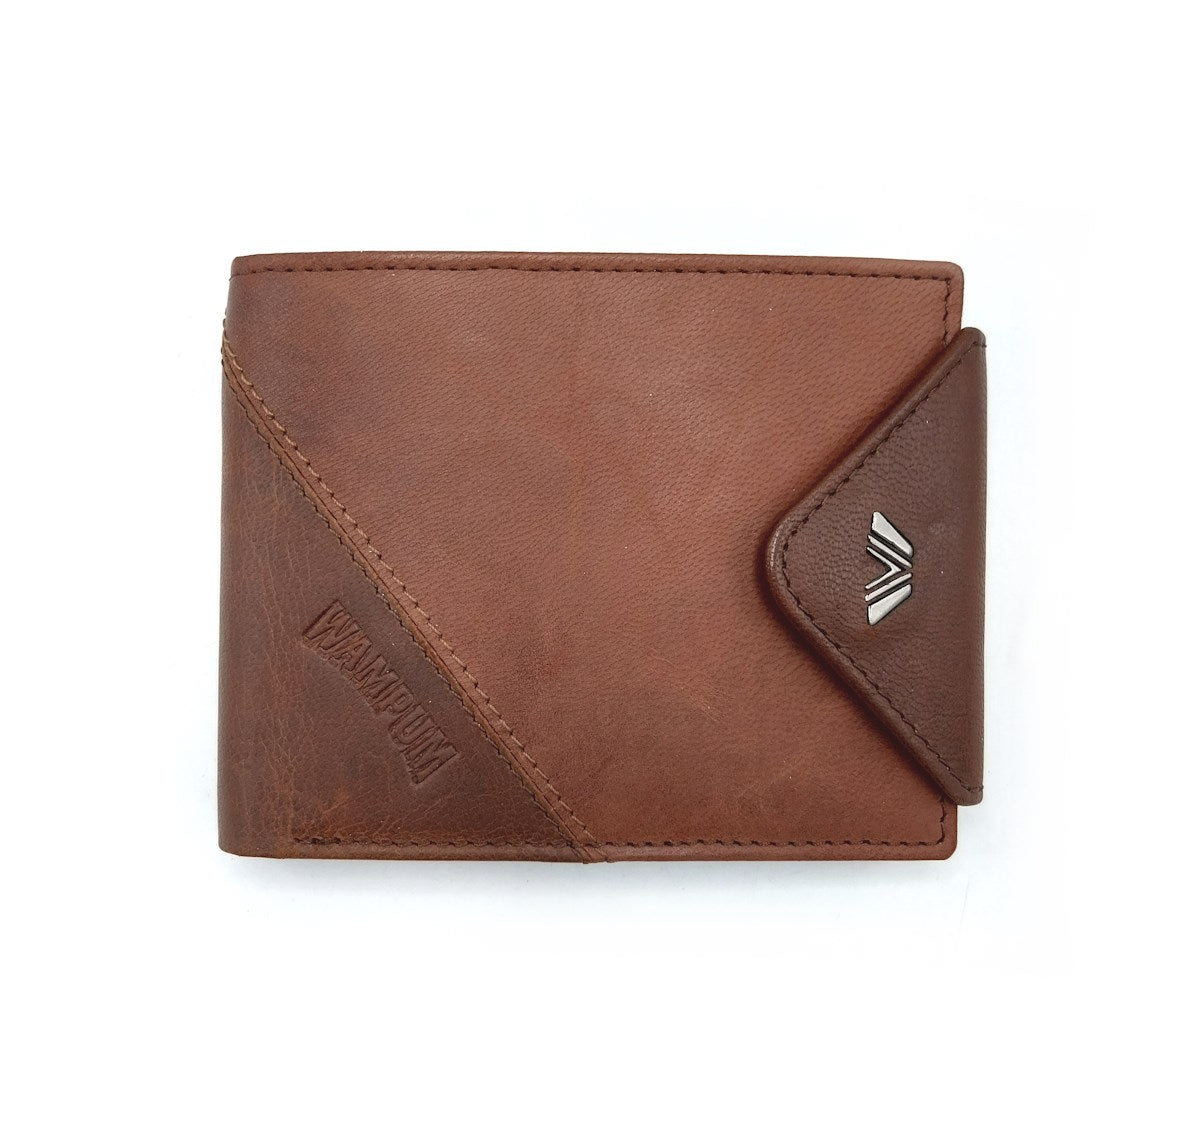 Genuine leather wallet, Wampum, art. pdk397-1